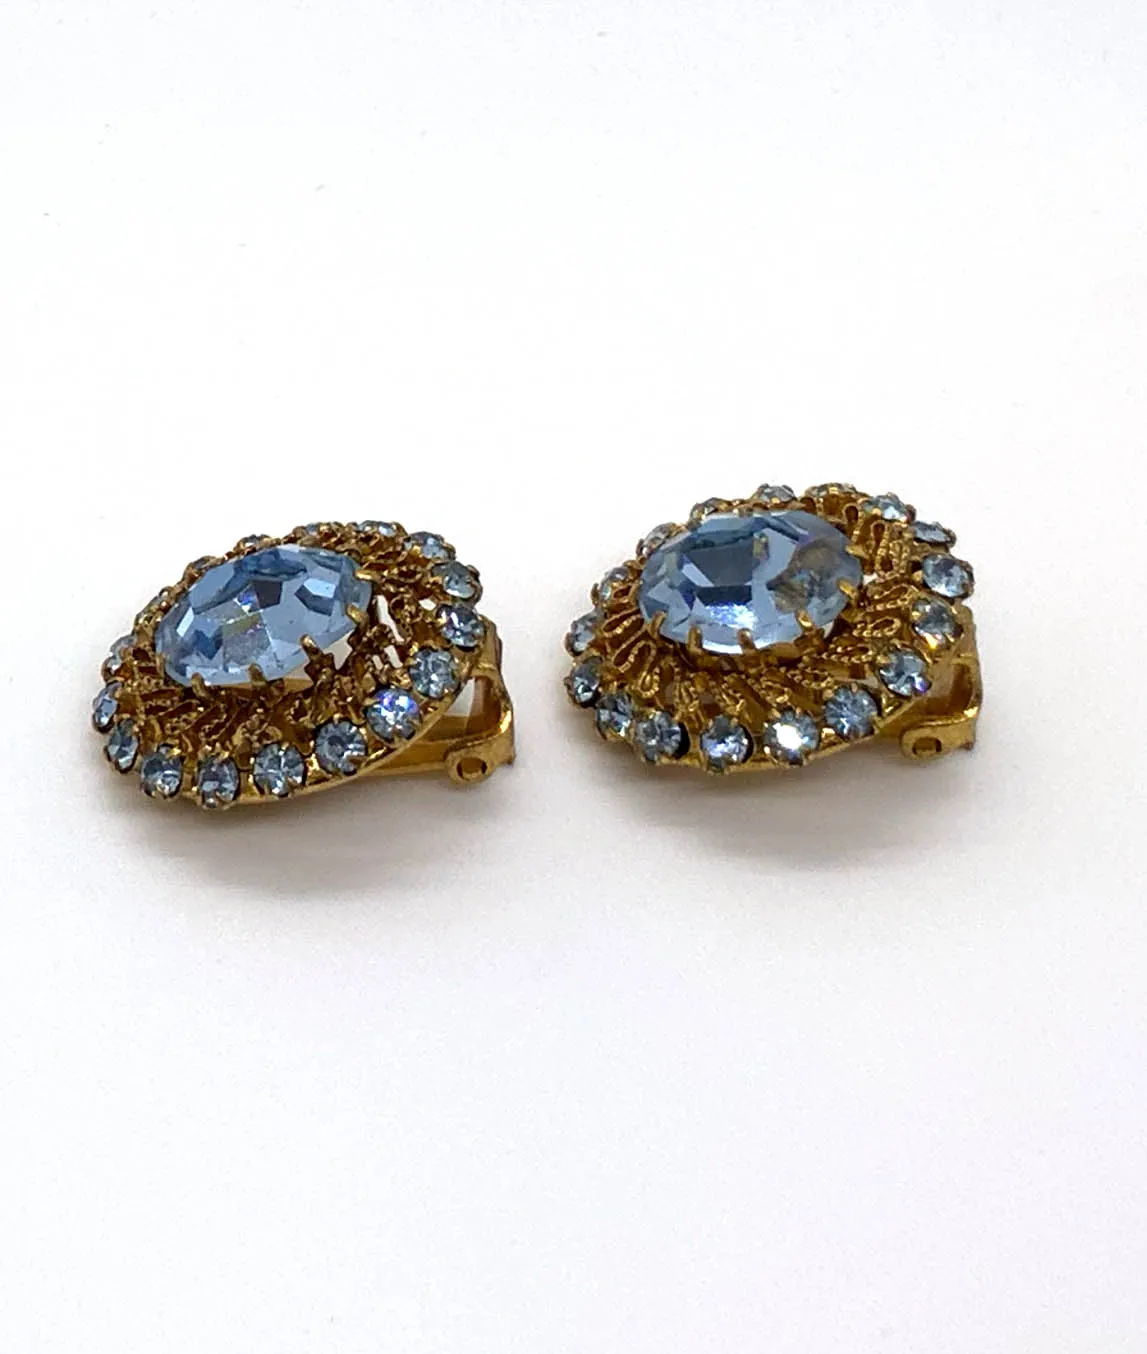 Vintage Austrian crystal earrings